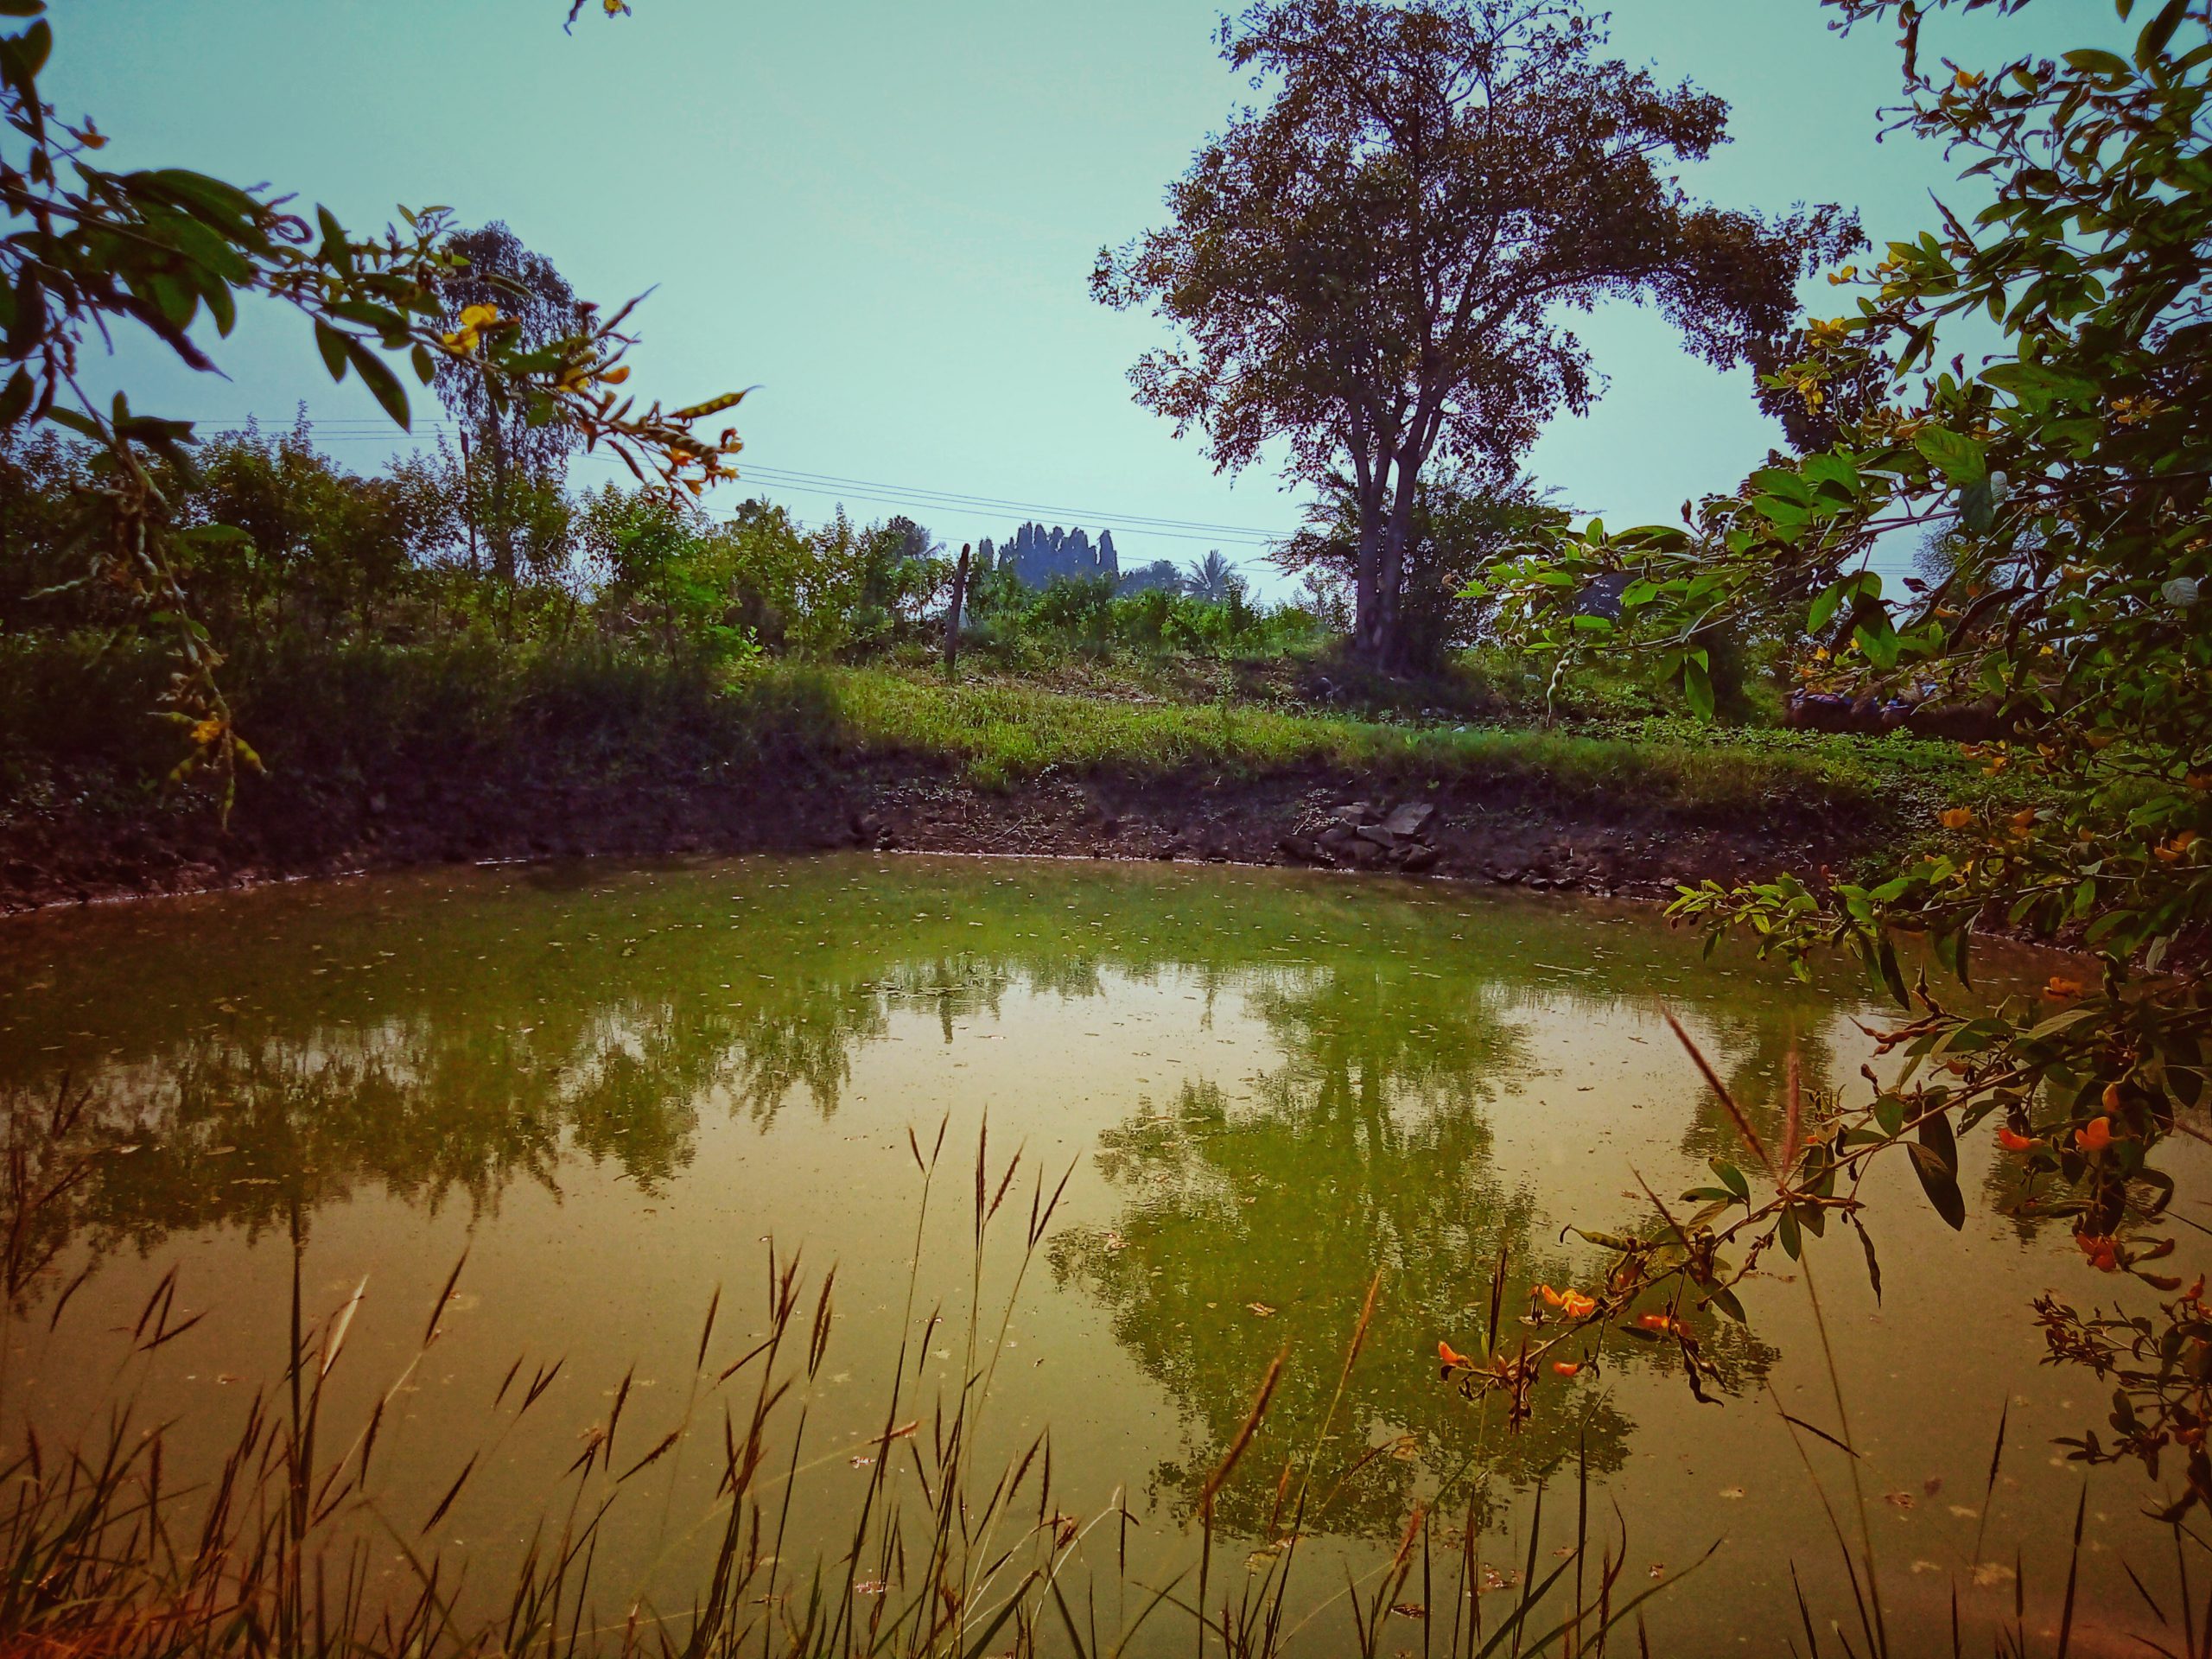 A pond